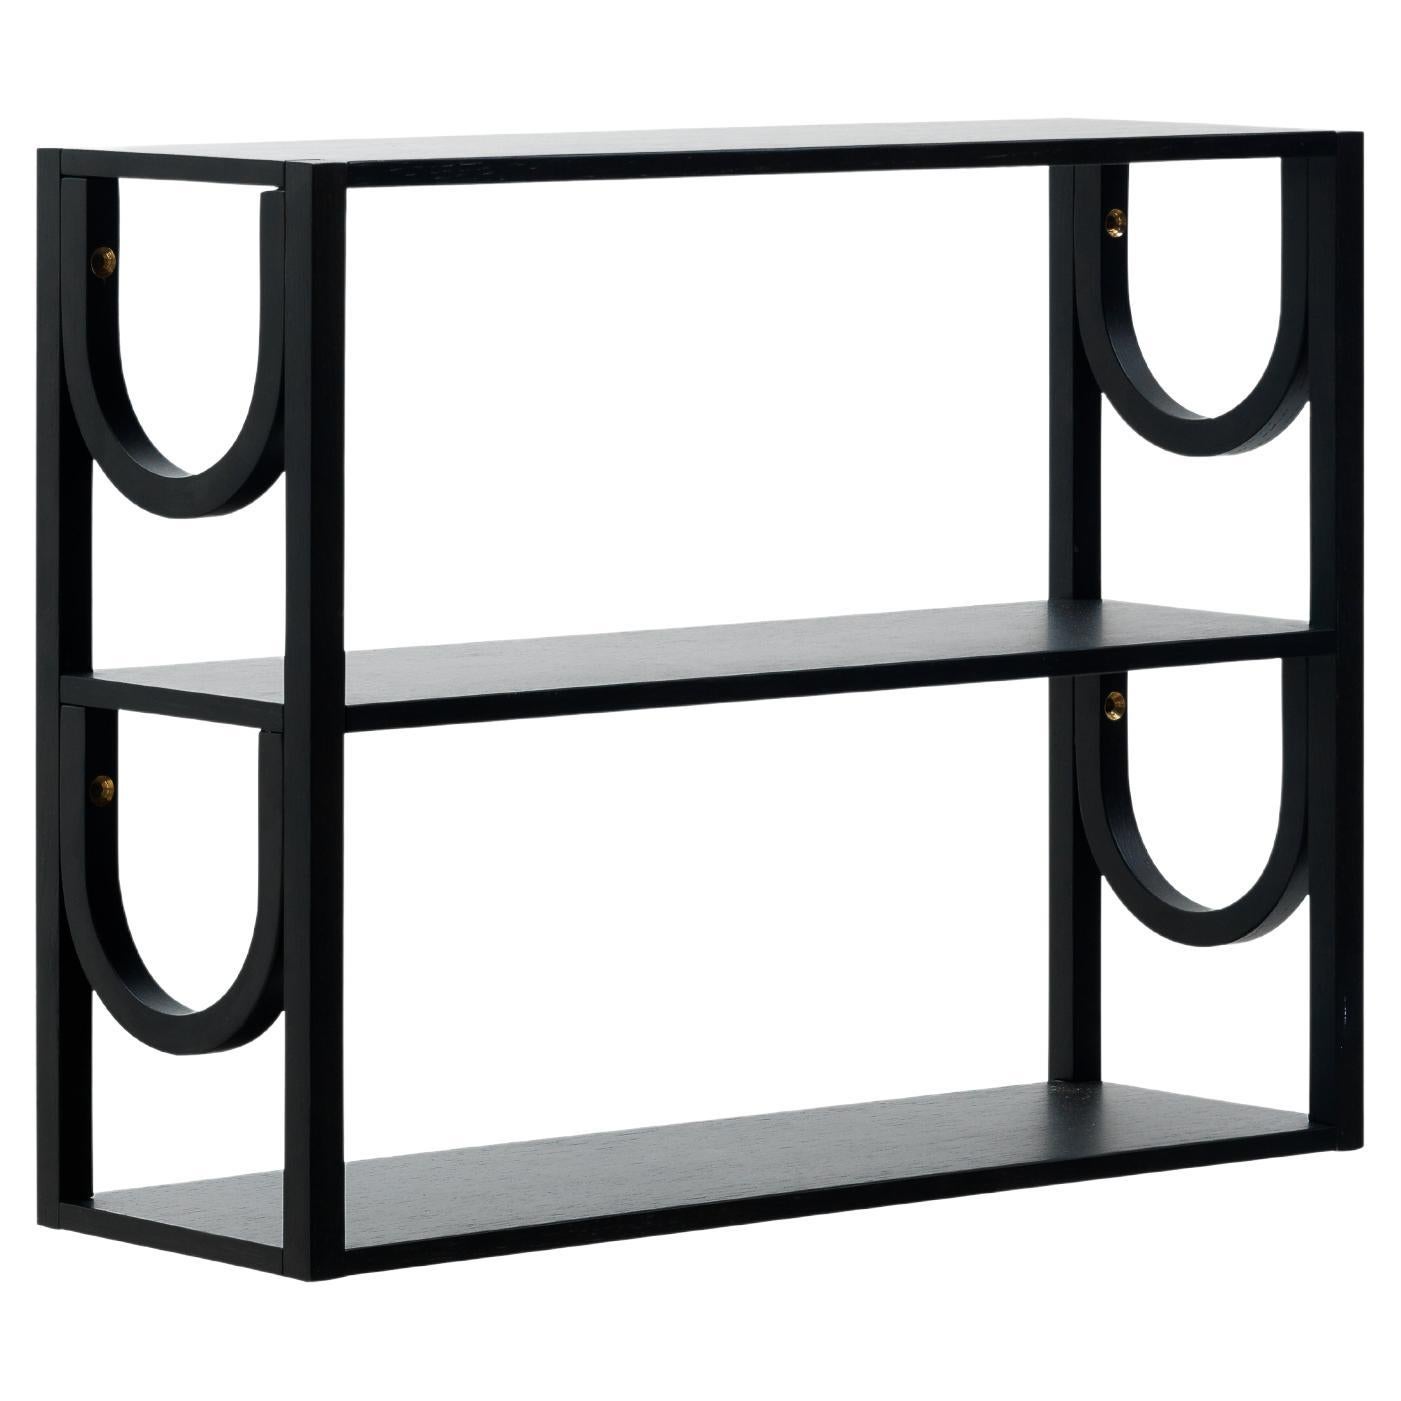 Arch Mini Shelf by Fogia, Black Oak